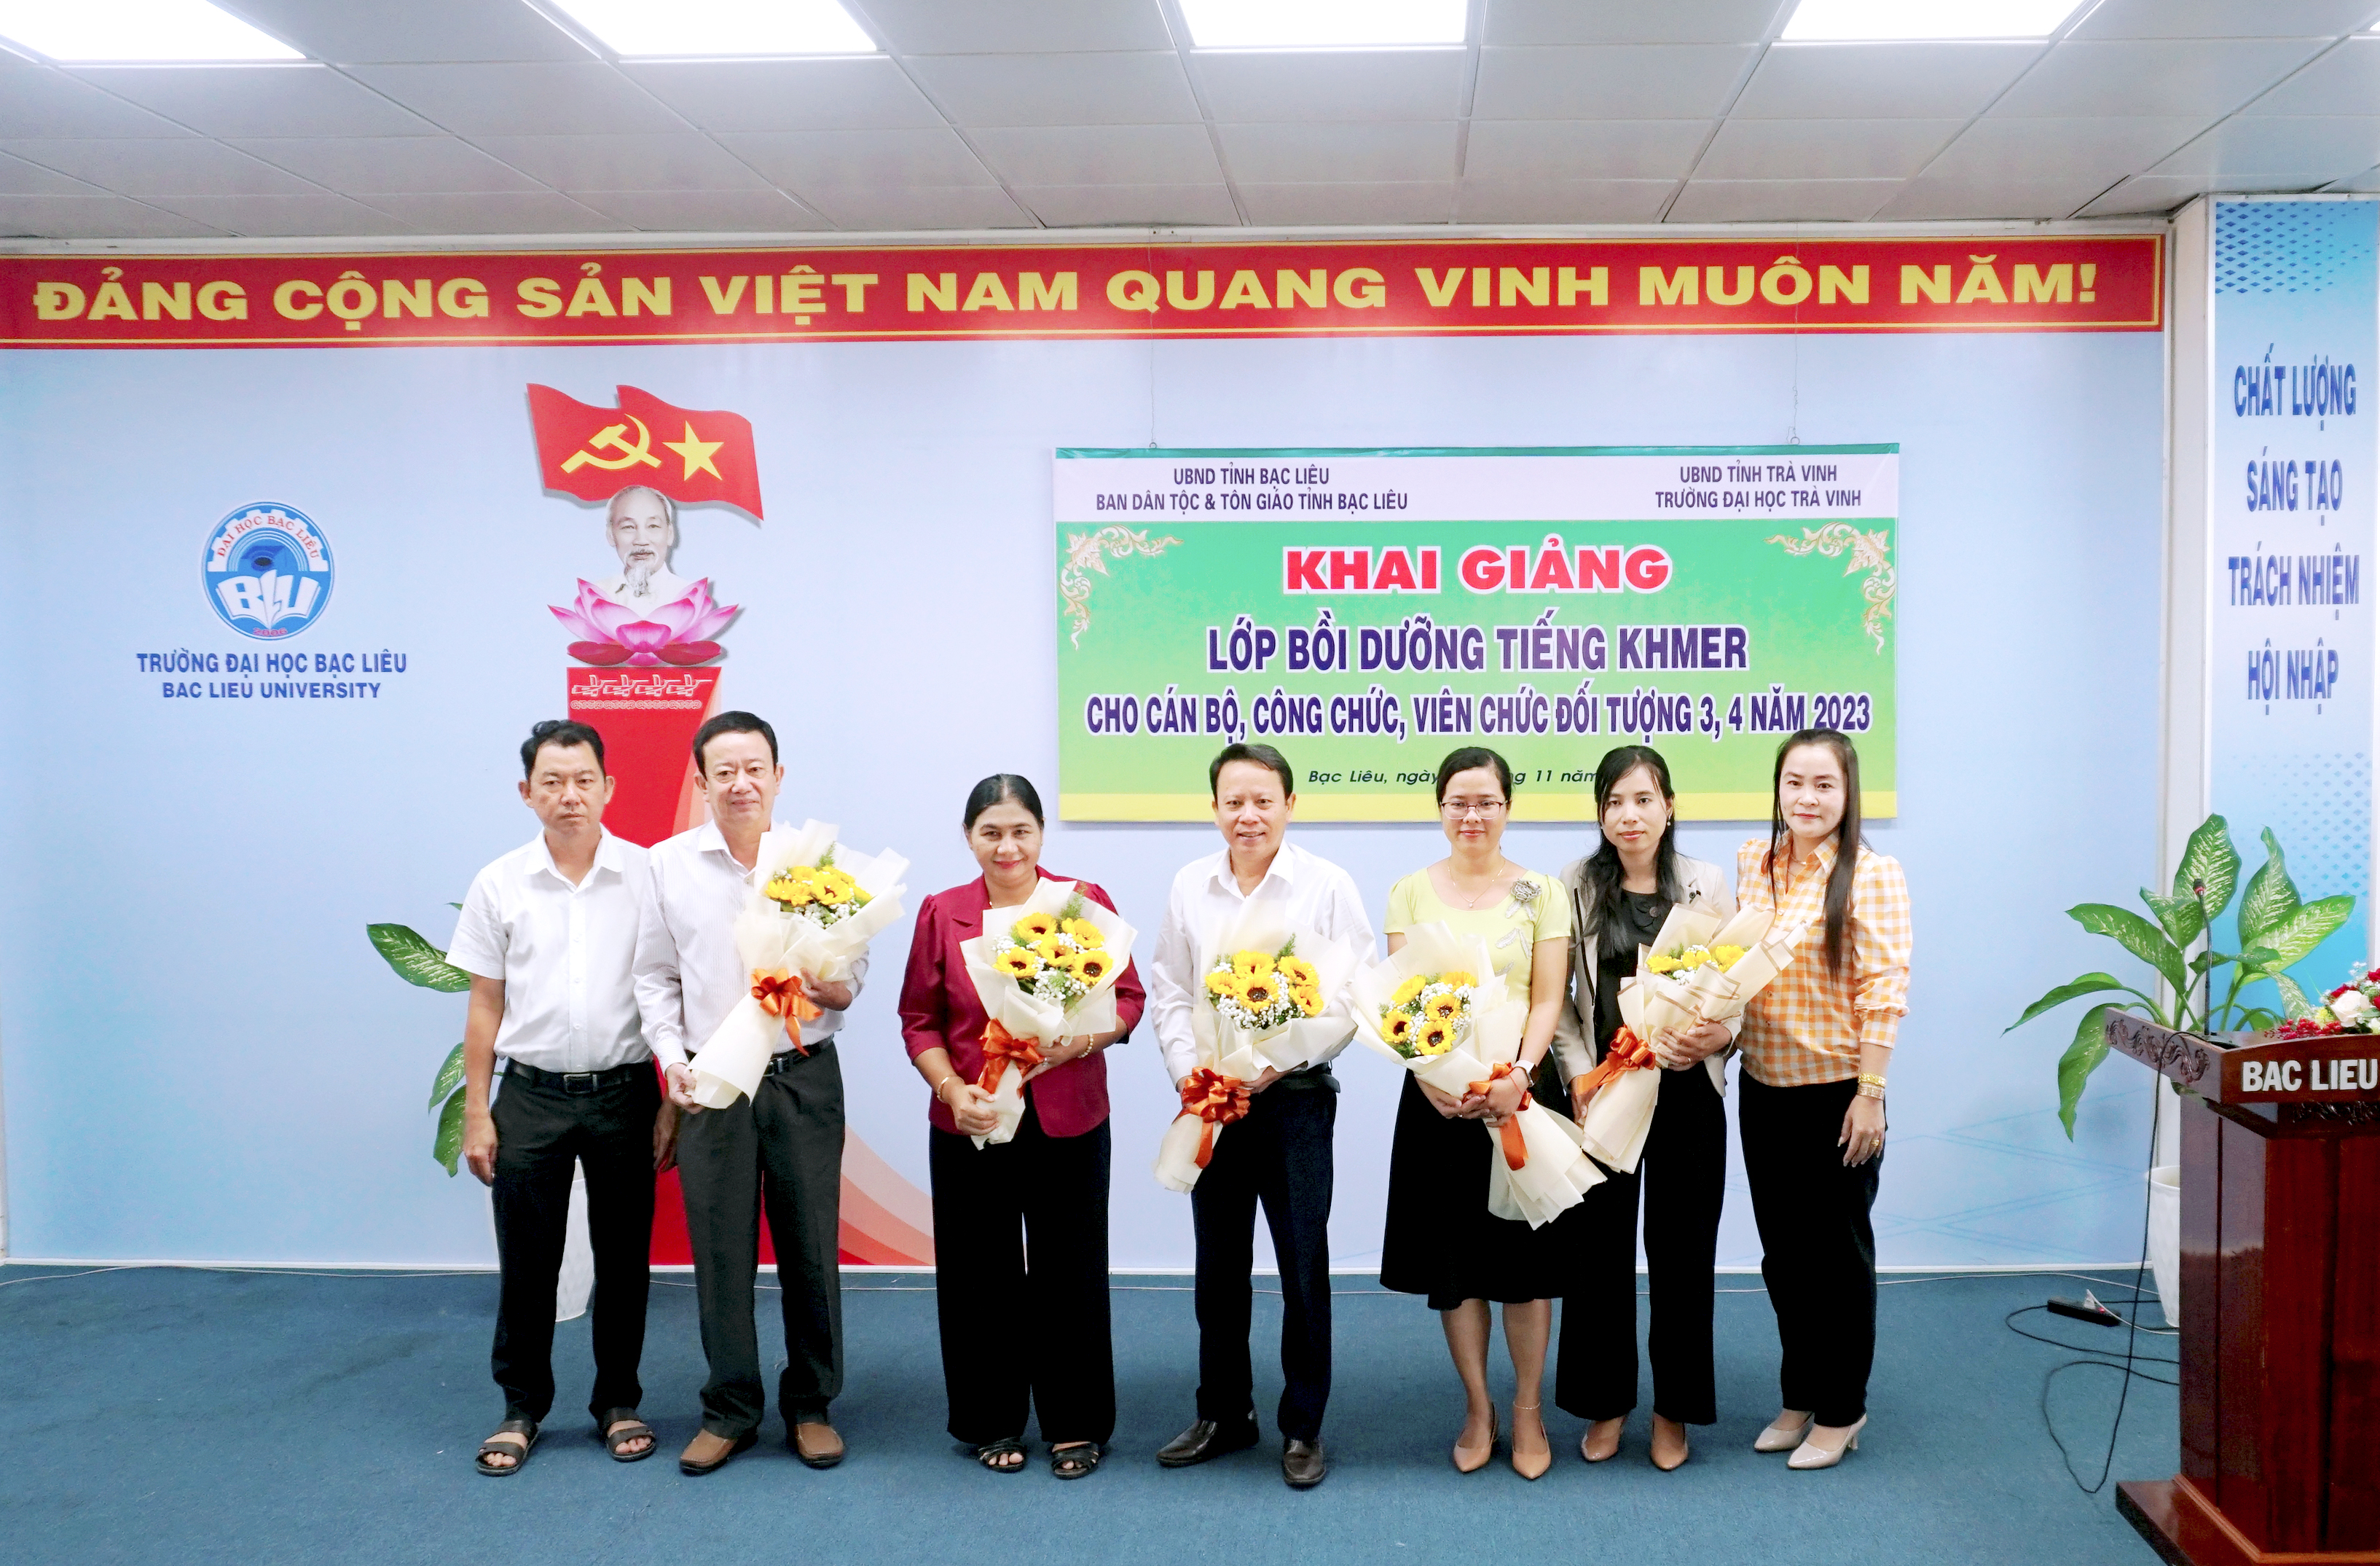 Trường Đại học Bạc liêu phối hợp Khai giảng lớp Bồi dưỡng tiếng Khmer cho cán bộ, công chức, viên chức đối tượng 3, 4 năm 2023